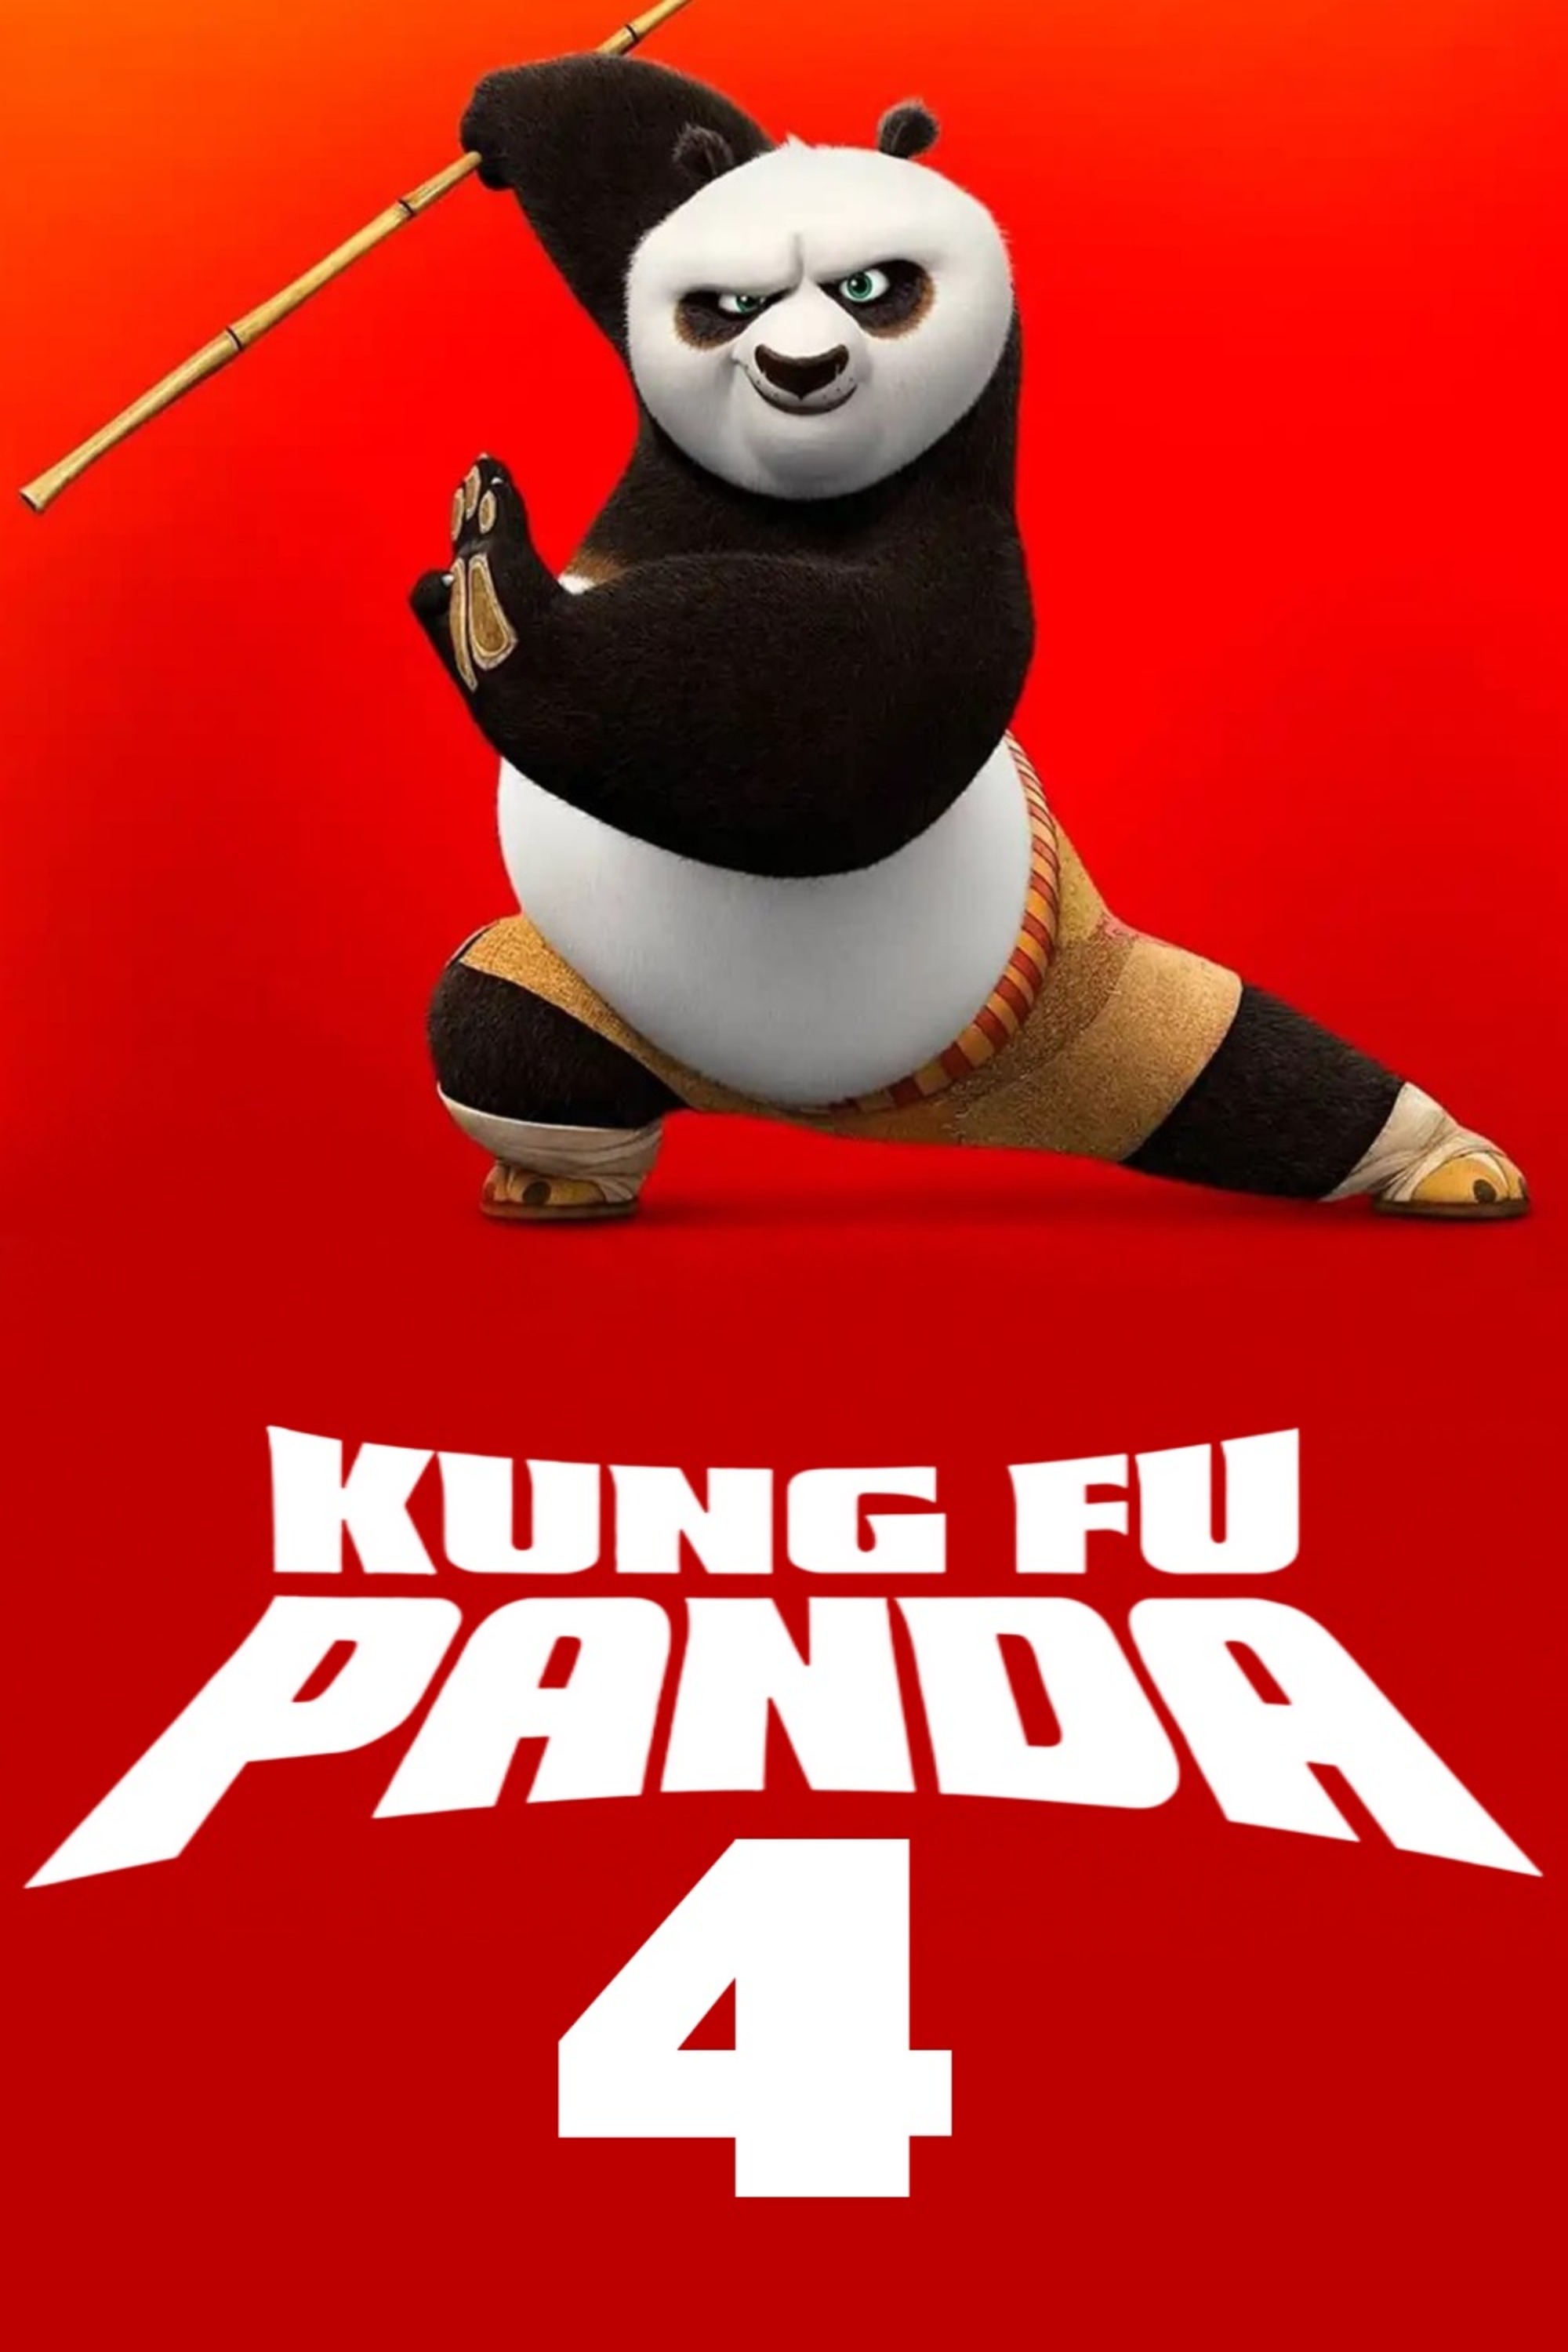 นักรบมังกรคัมแบ็ก! "Kung Fu Panda 4" จะพาไปเผชิญหน้ากับวายร้ายคนใหม่สุดอันตราย